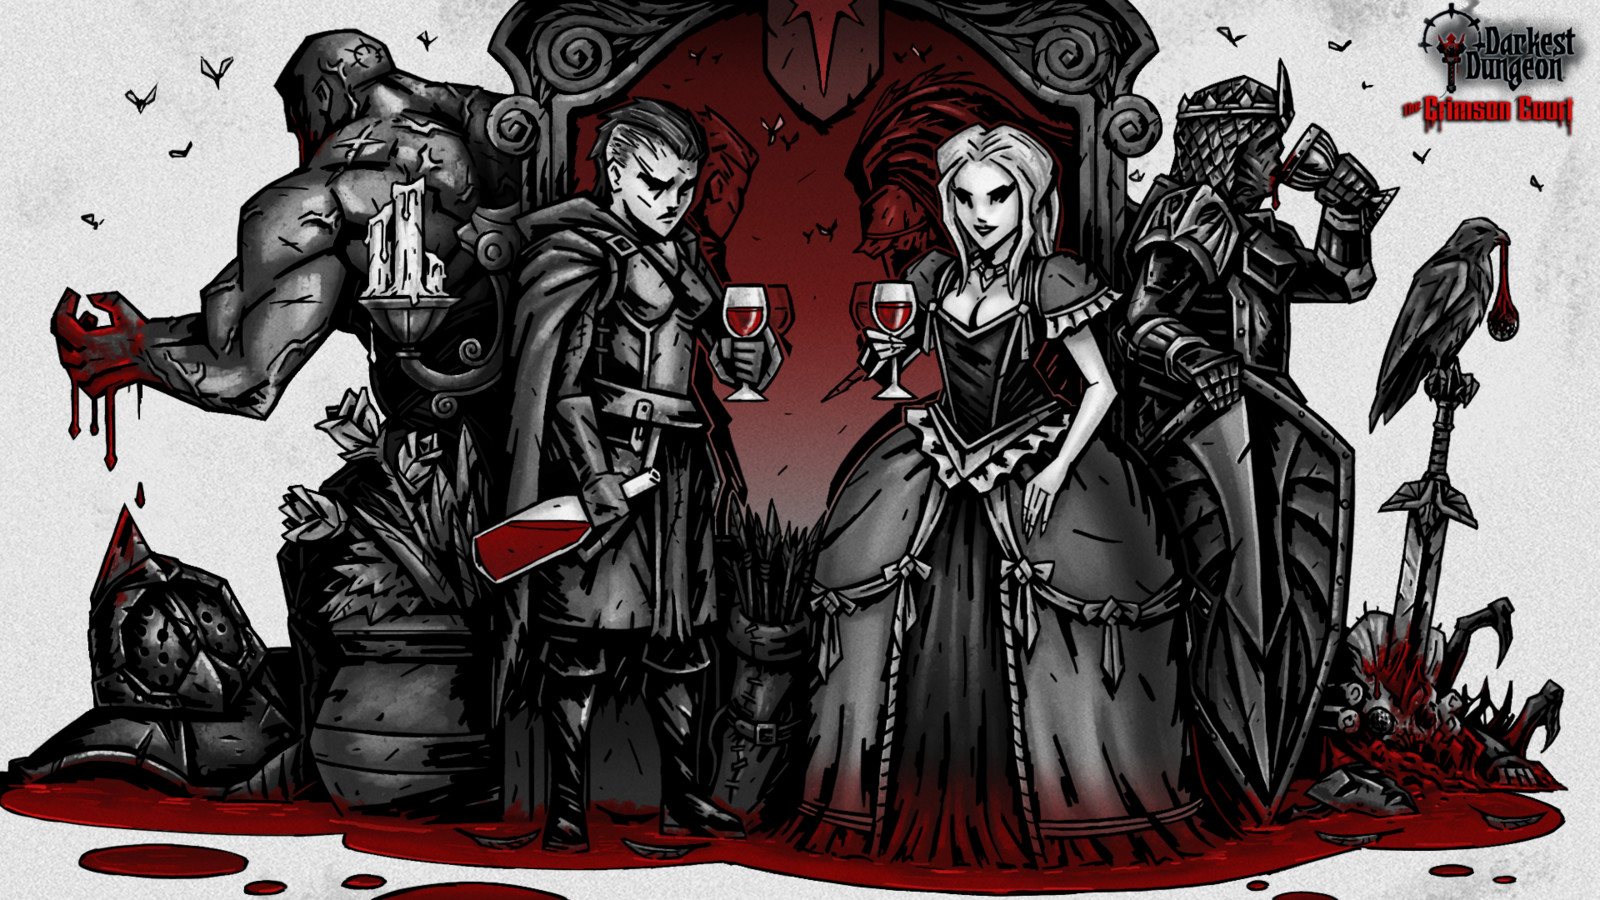 darkest dungeon crimson court keeps crash